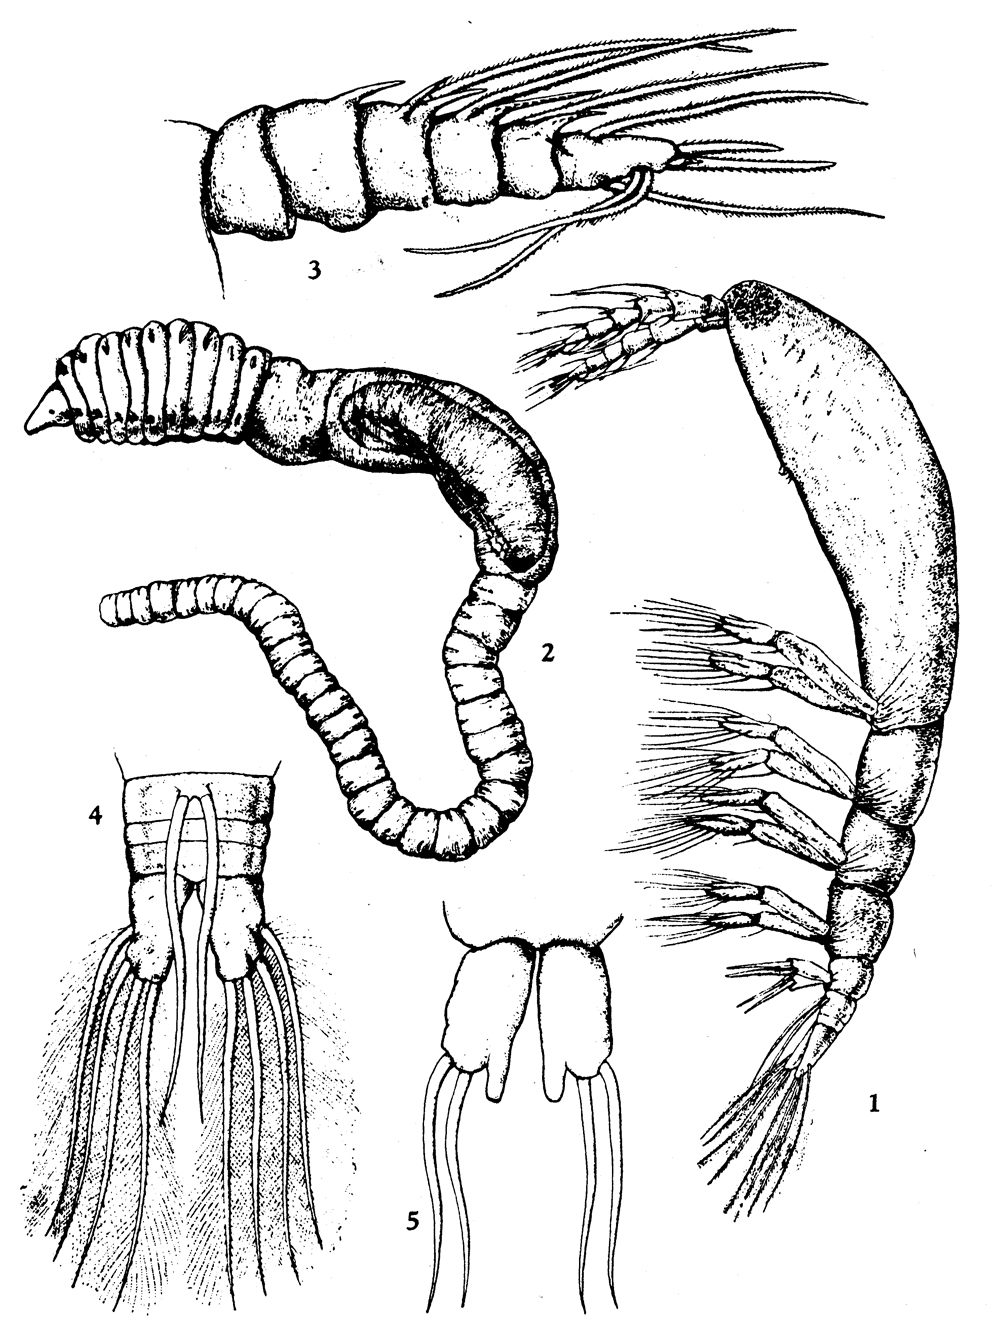 Espce Monstrilla capitellicola - Planche 1 de figures morphologiques